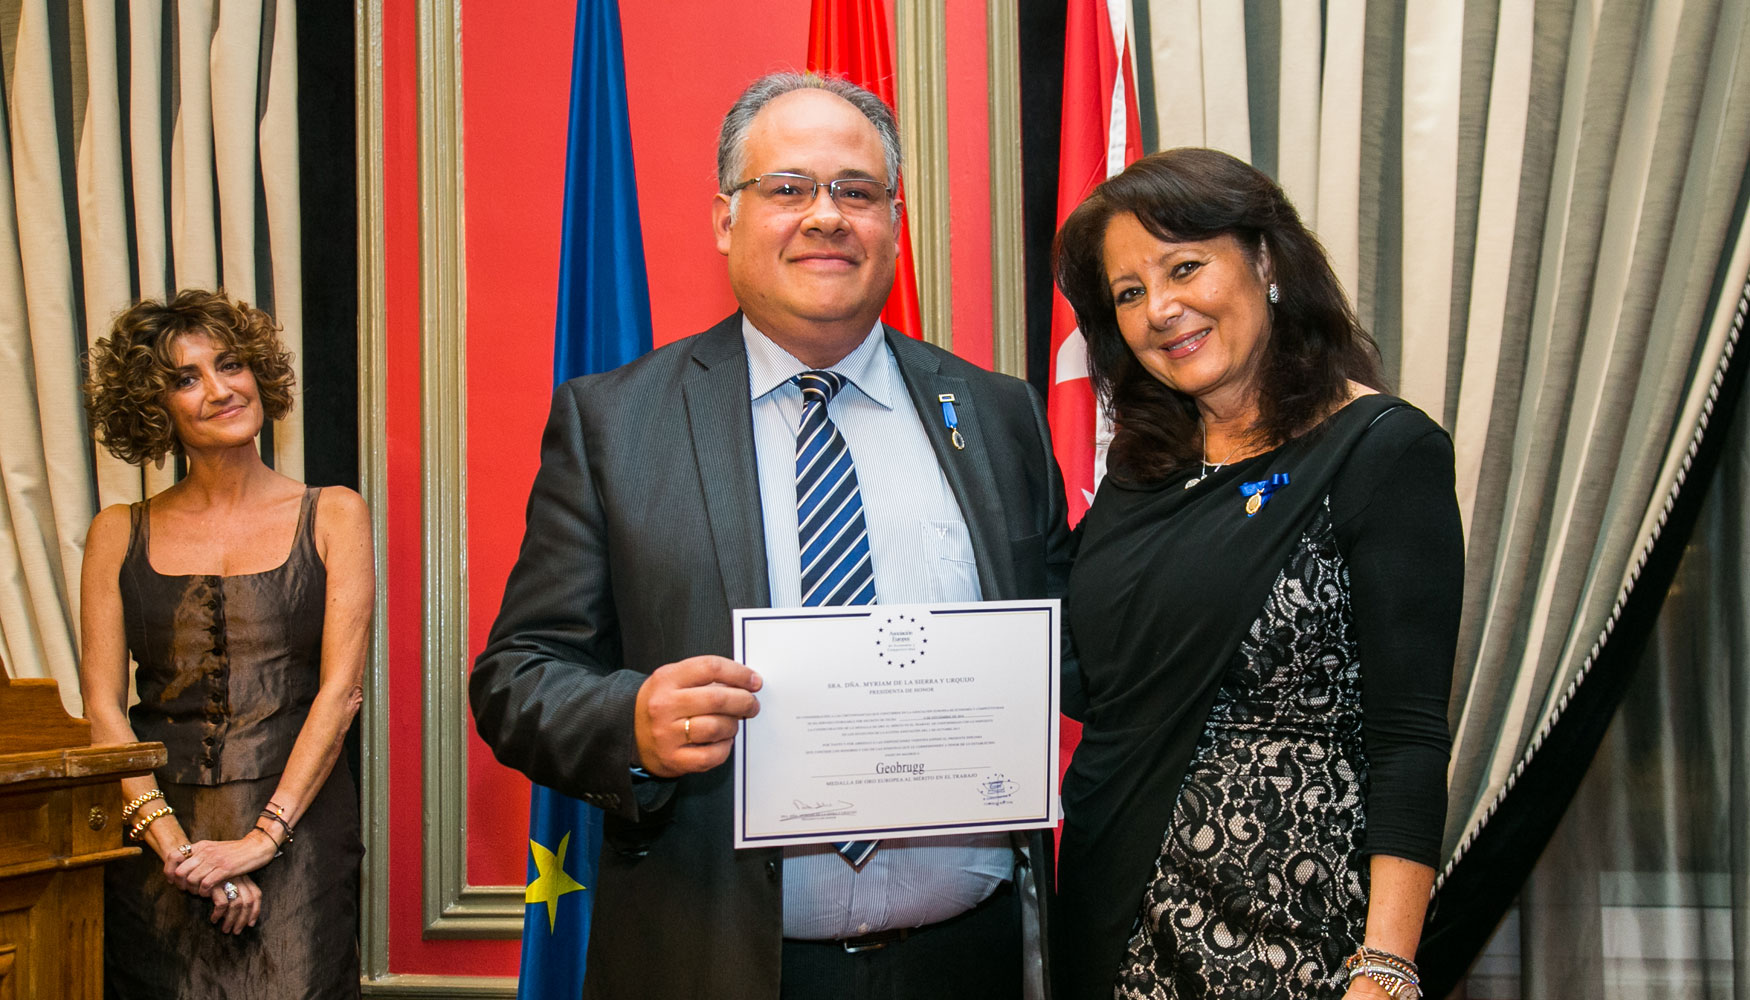 Entrega a Roberto Luis Fonseca, director general de Geobrugg Ibrica, de la Medalla de Oro Europea al Mrito en el Trabajo...